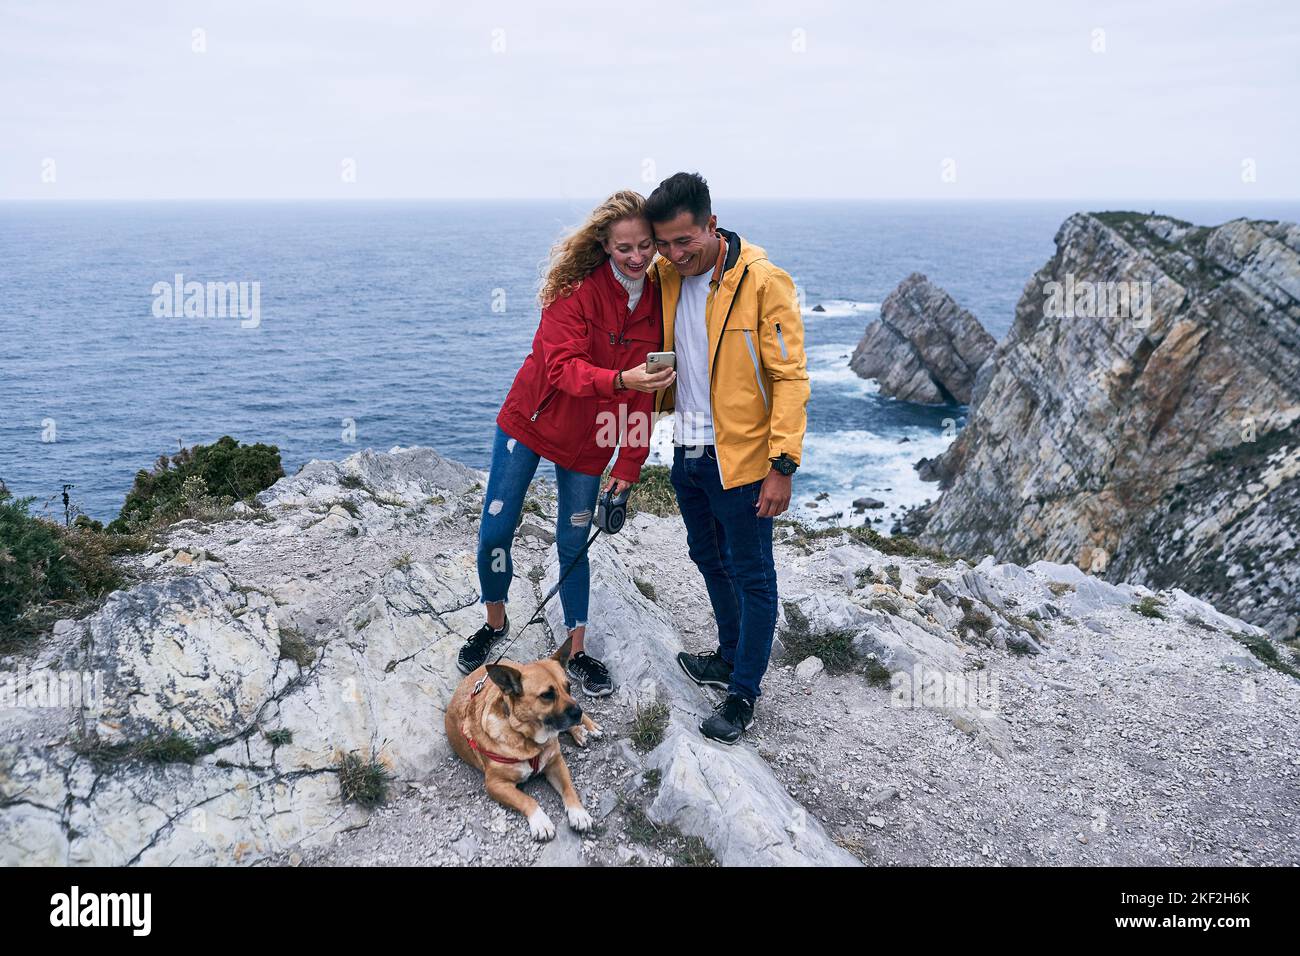 Das blonde kaukasische Mädchen steht auf den Felsen nahe dem Meer neben einem Hund, der einem lateiner mit gelber Jacke, cabo de penas, ihren Smartphone-Bildschirm zeigt Stockfoto